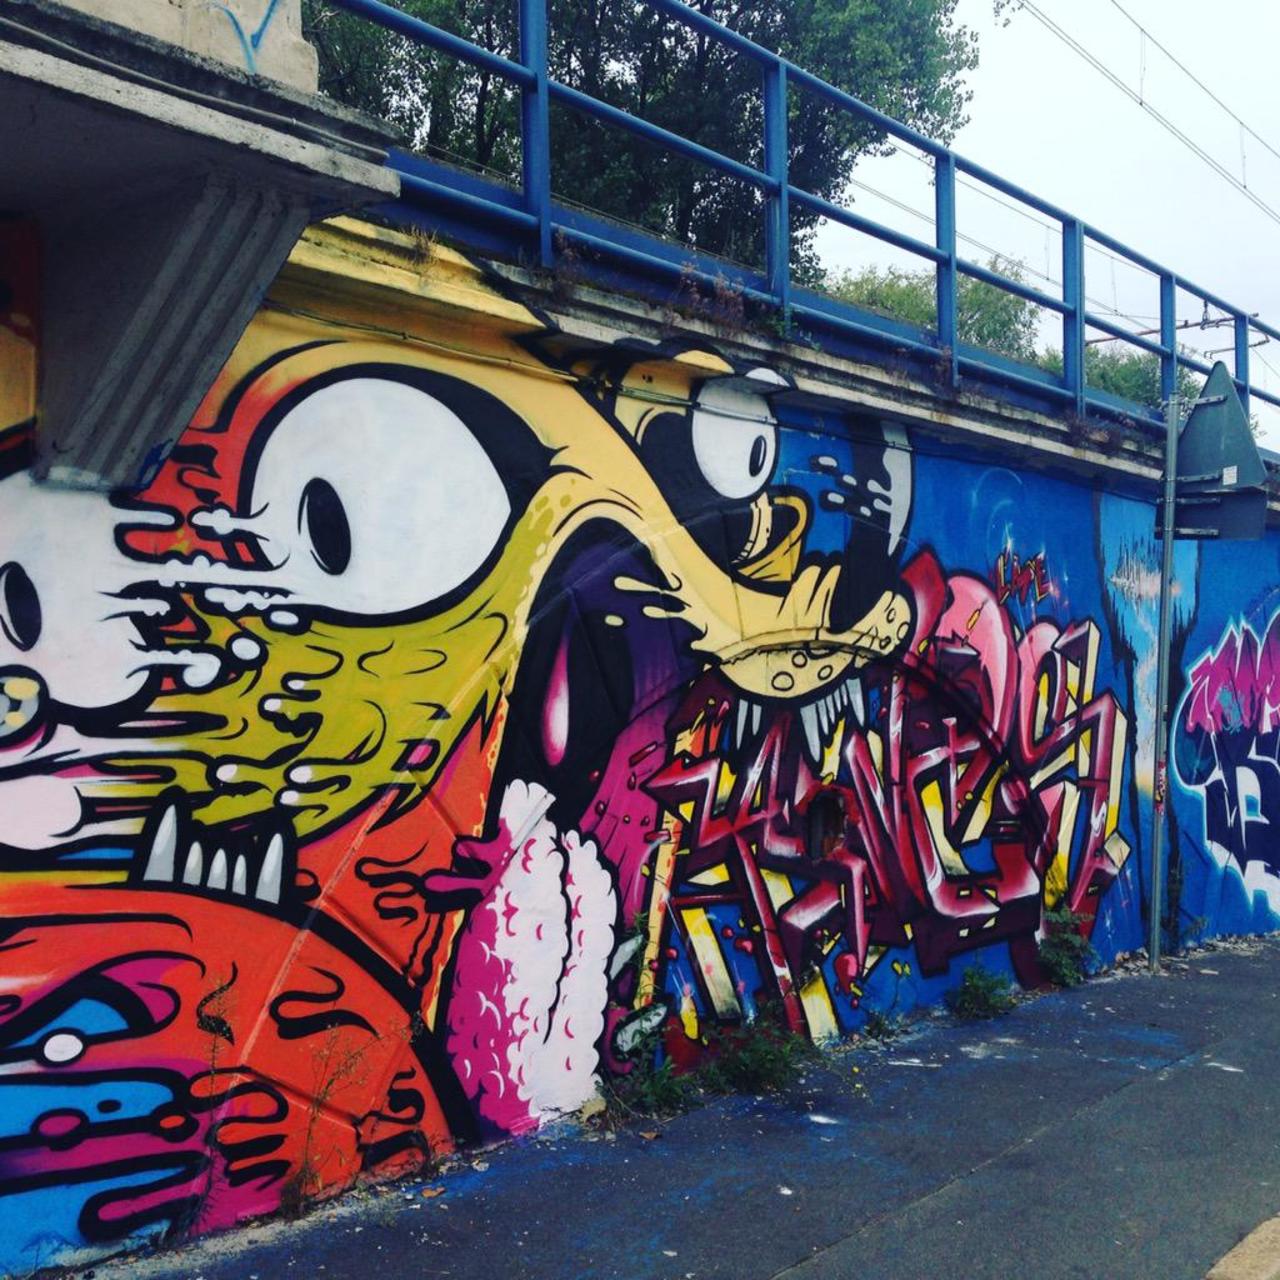 #streetart #milano #graffiti #graffitiart http://t.co/Kom73VnY6U